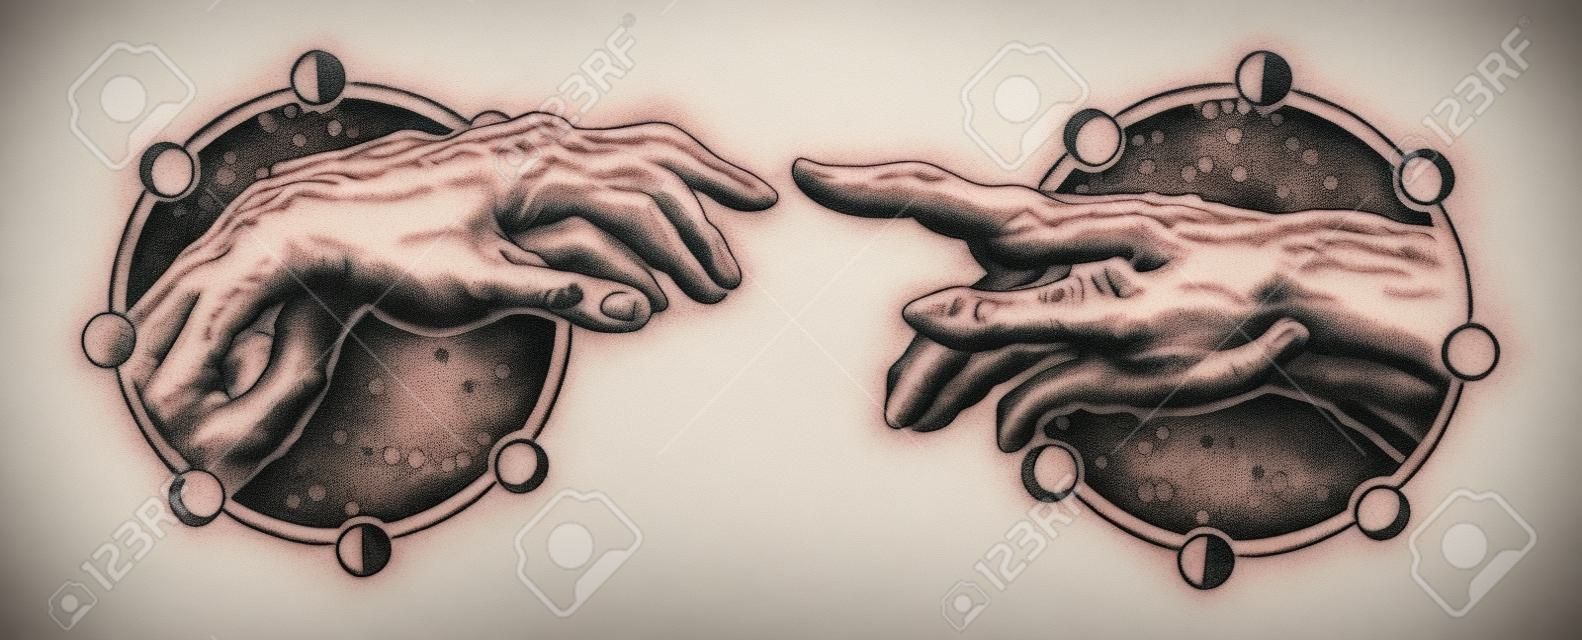 Boski dotyk Michała Anioła. Ludzkie ręce, dotykając palcami tatuaż i projekt koszulki. Renesansowy tatuaż dłoni. Bogowie i Adam, symbol duchowości, religii, związku i interakcji